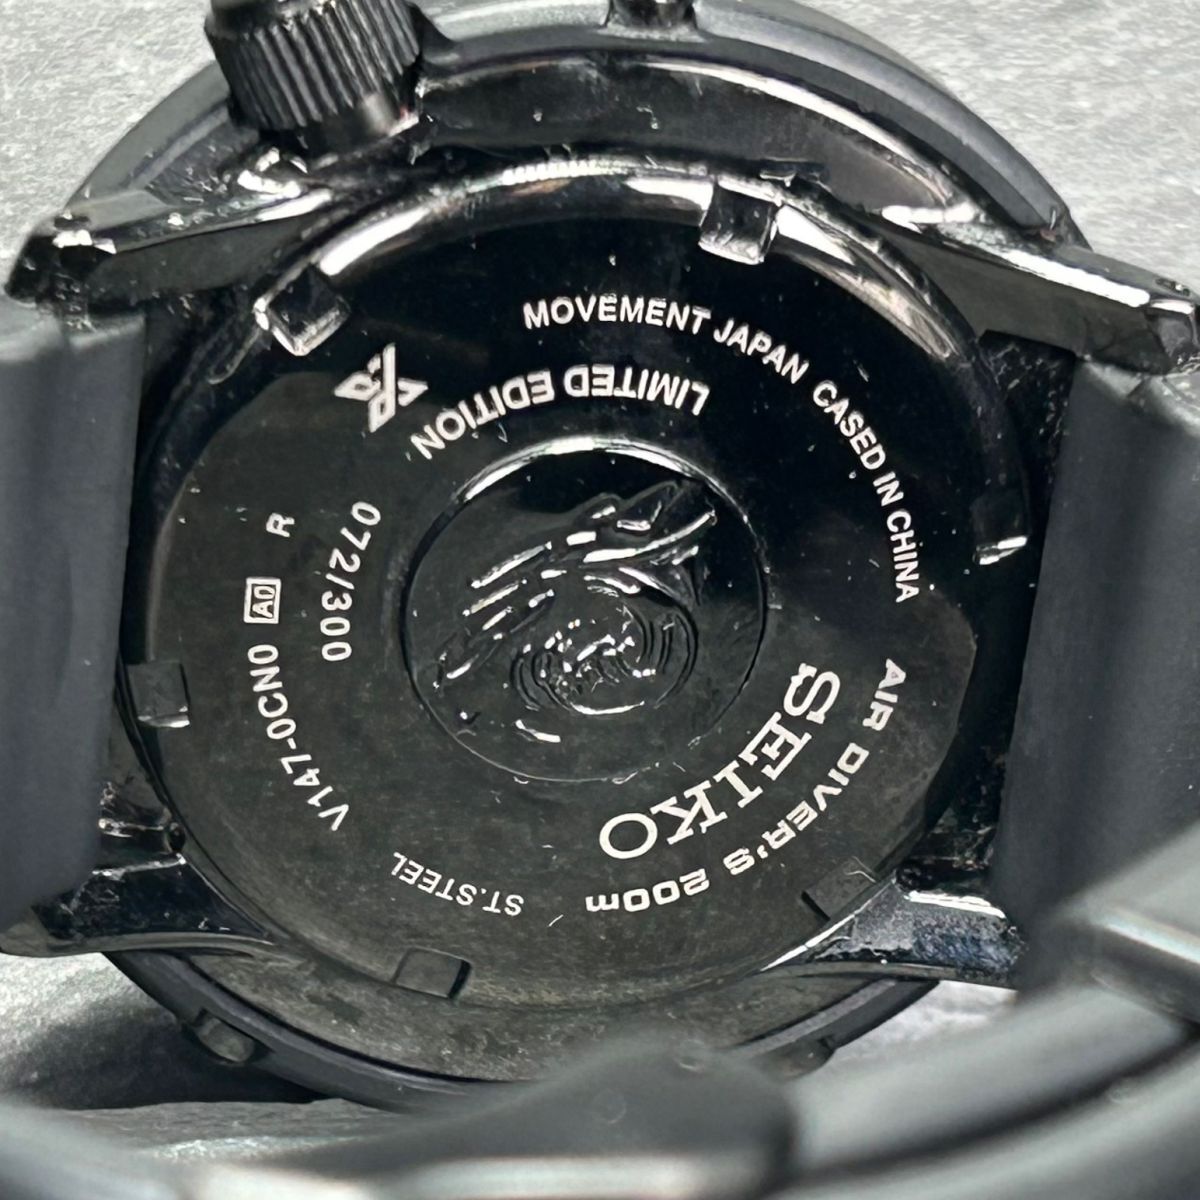 400本限定 フリーメンズスポーティングクラブ限定 SEIKO セイコー PROSPEX プロスペックス SBDN029 腕時計 ダイバーソーラー アナログ 黒_画像8